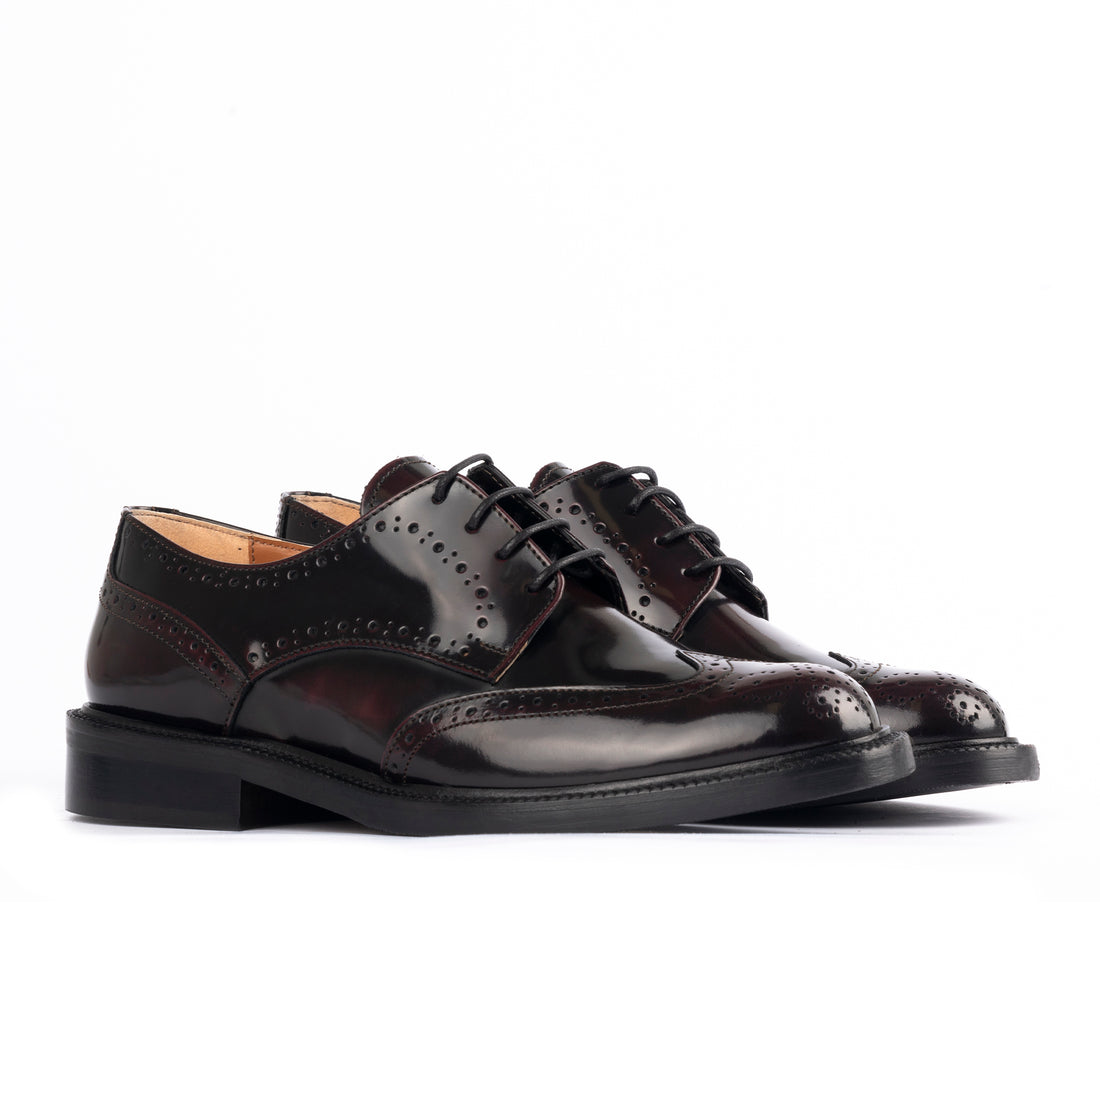 Bordeaux leather Oxford shoes